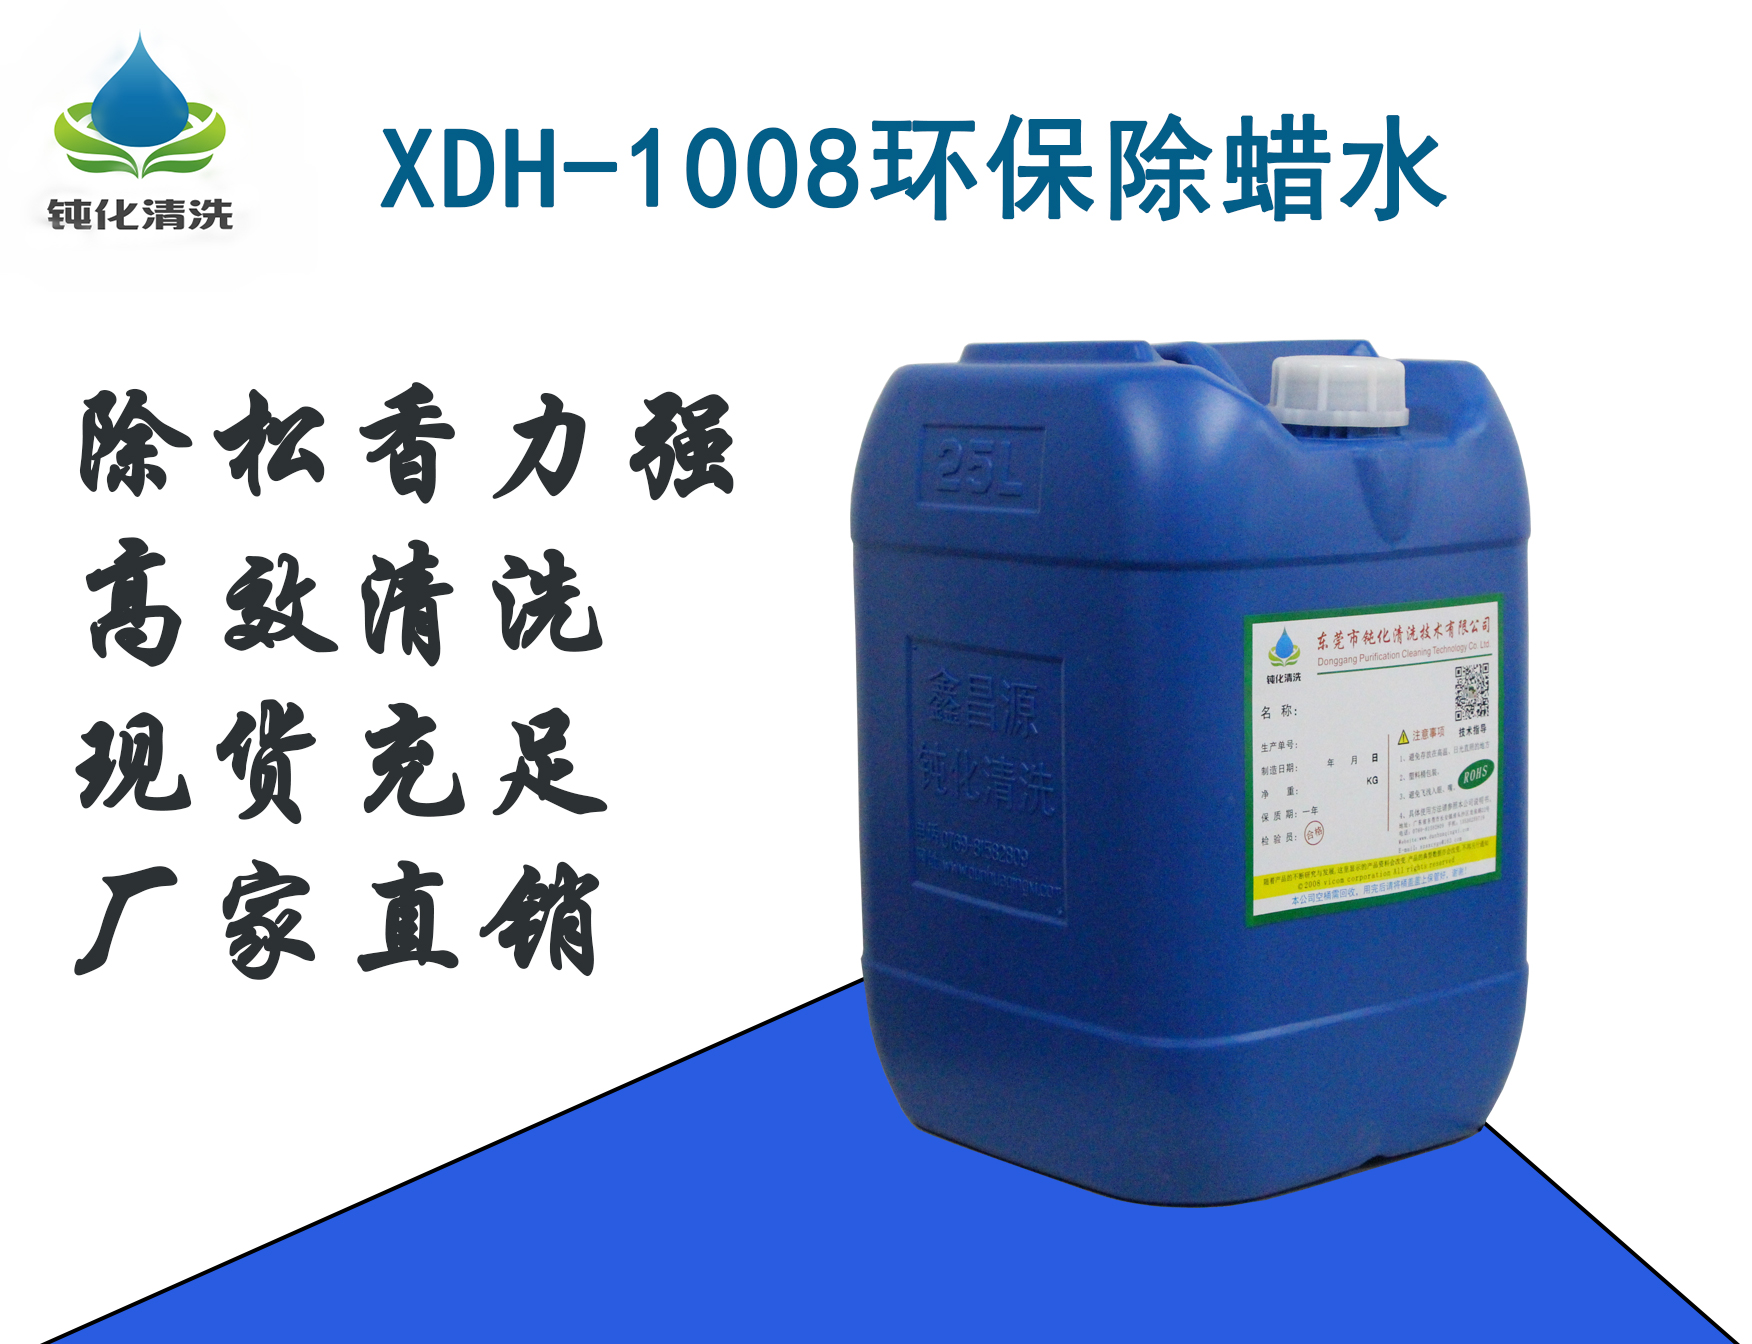 XDH-1008A中性除蜡水